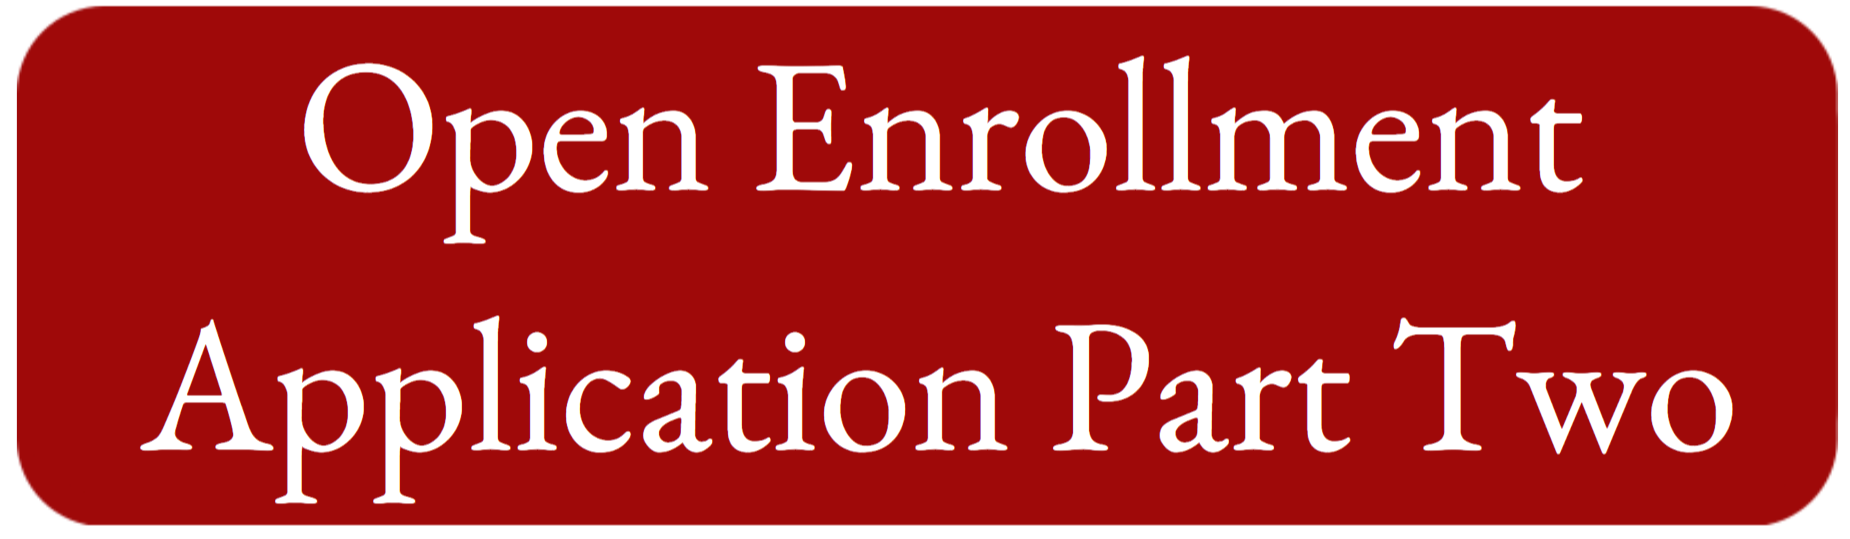 open enrollment button